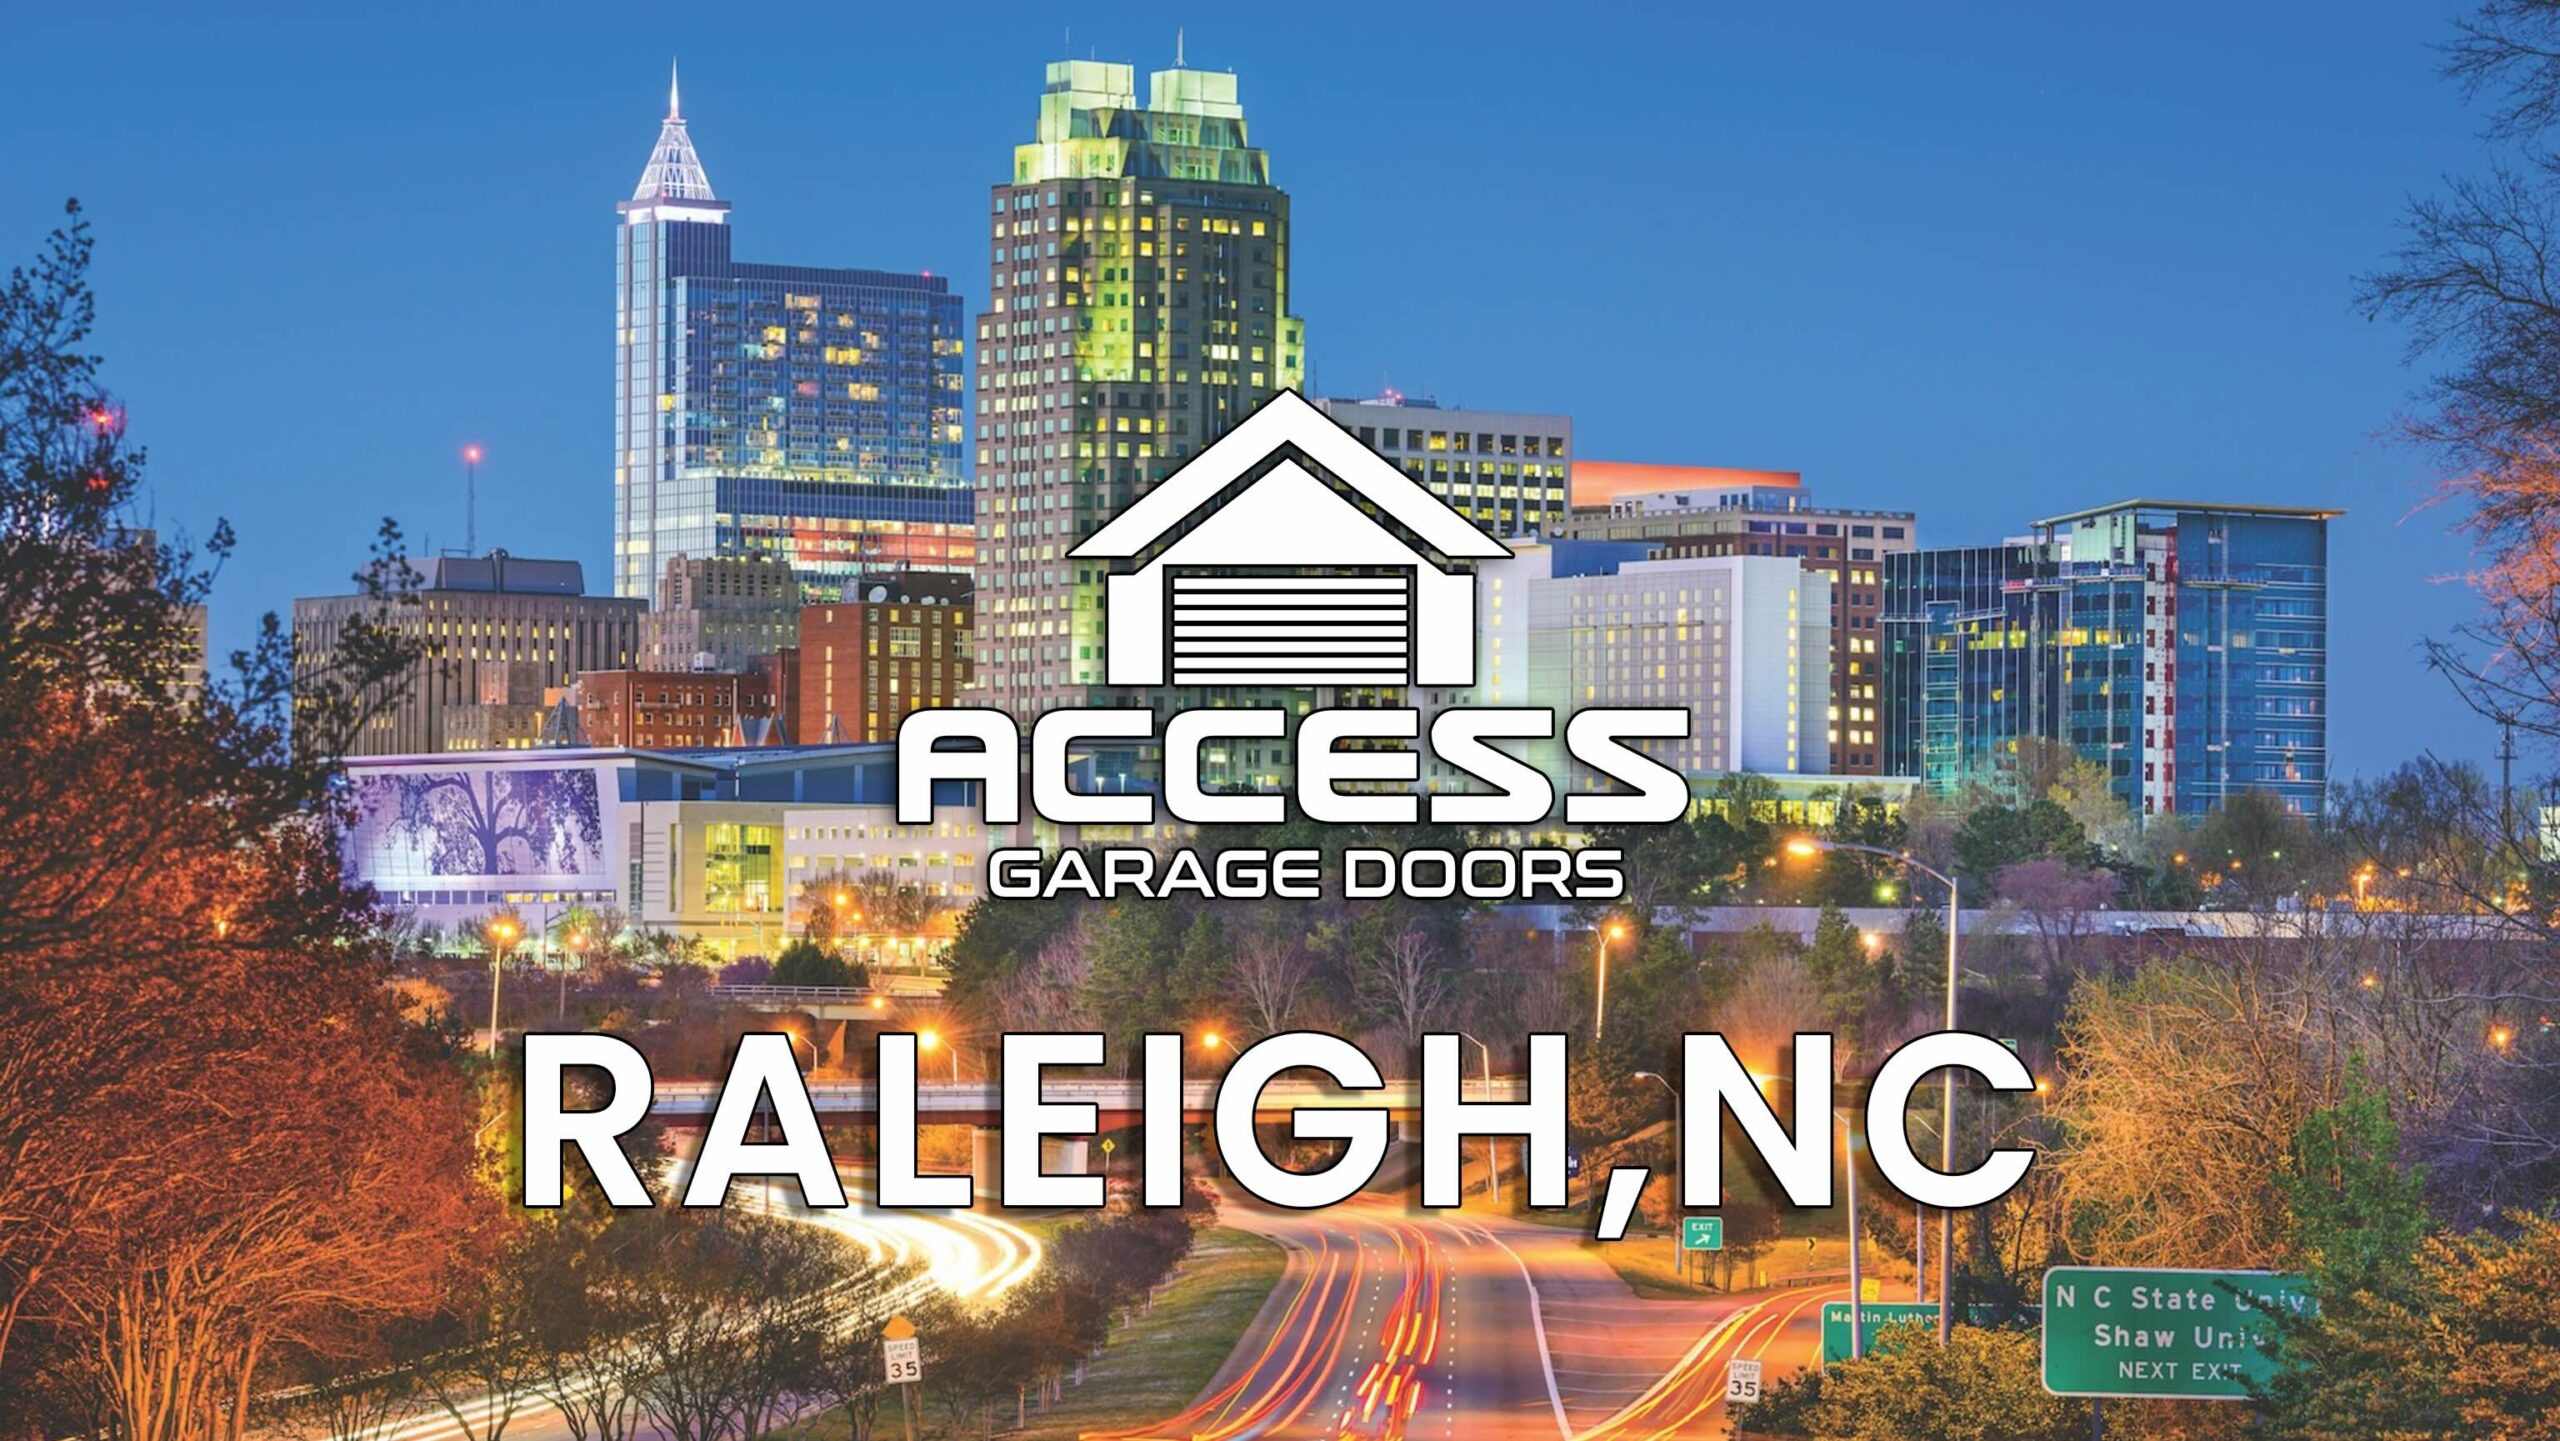 Raleigh skyline for garage door company